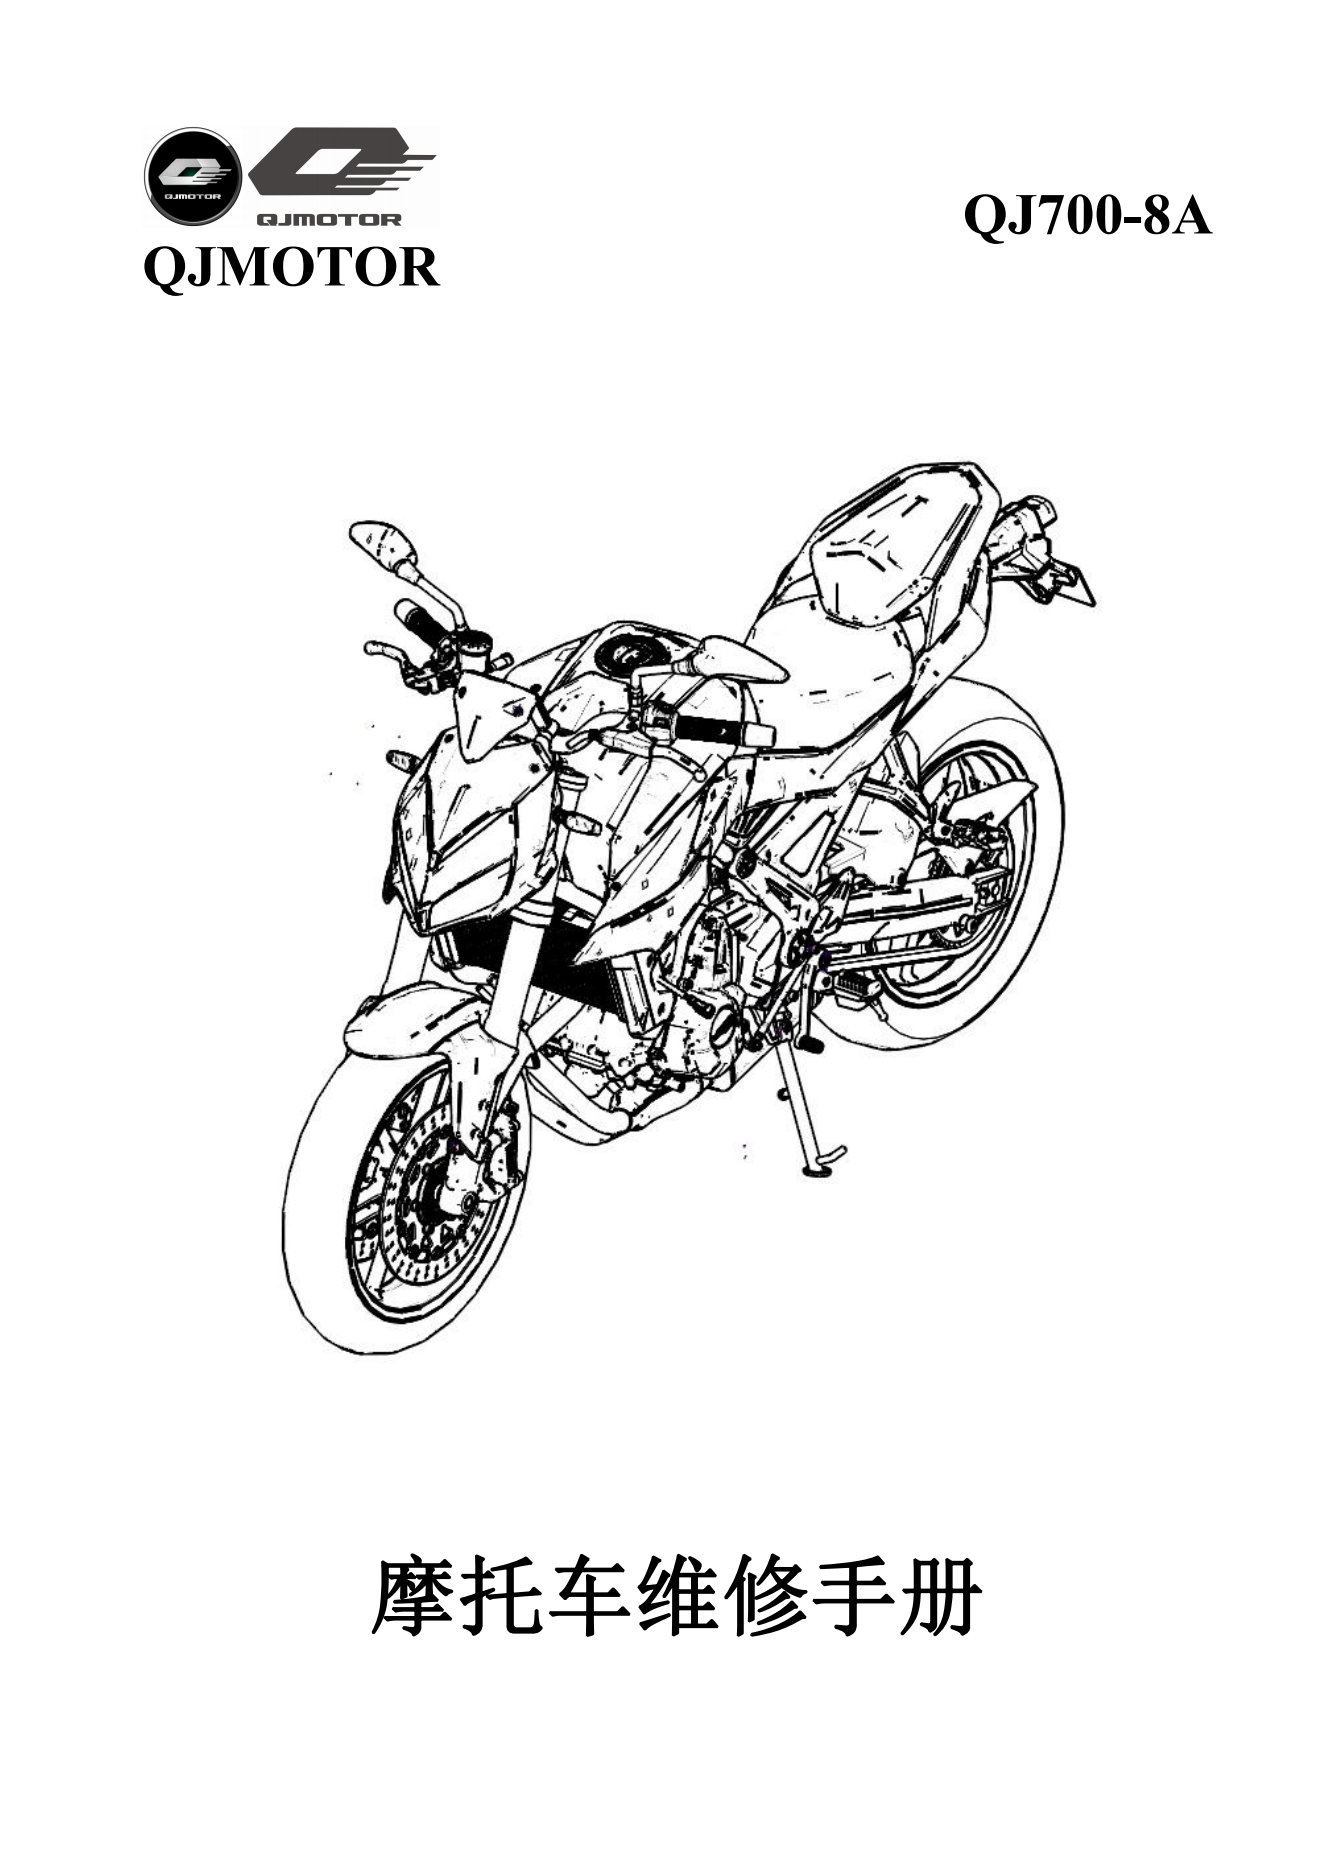 简体中文钱江追700 QJ700-8A维修手册插图